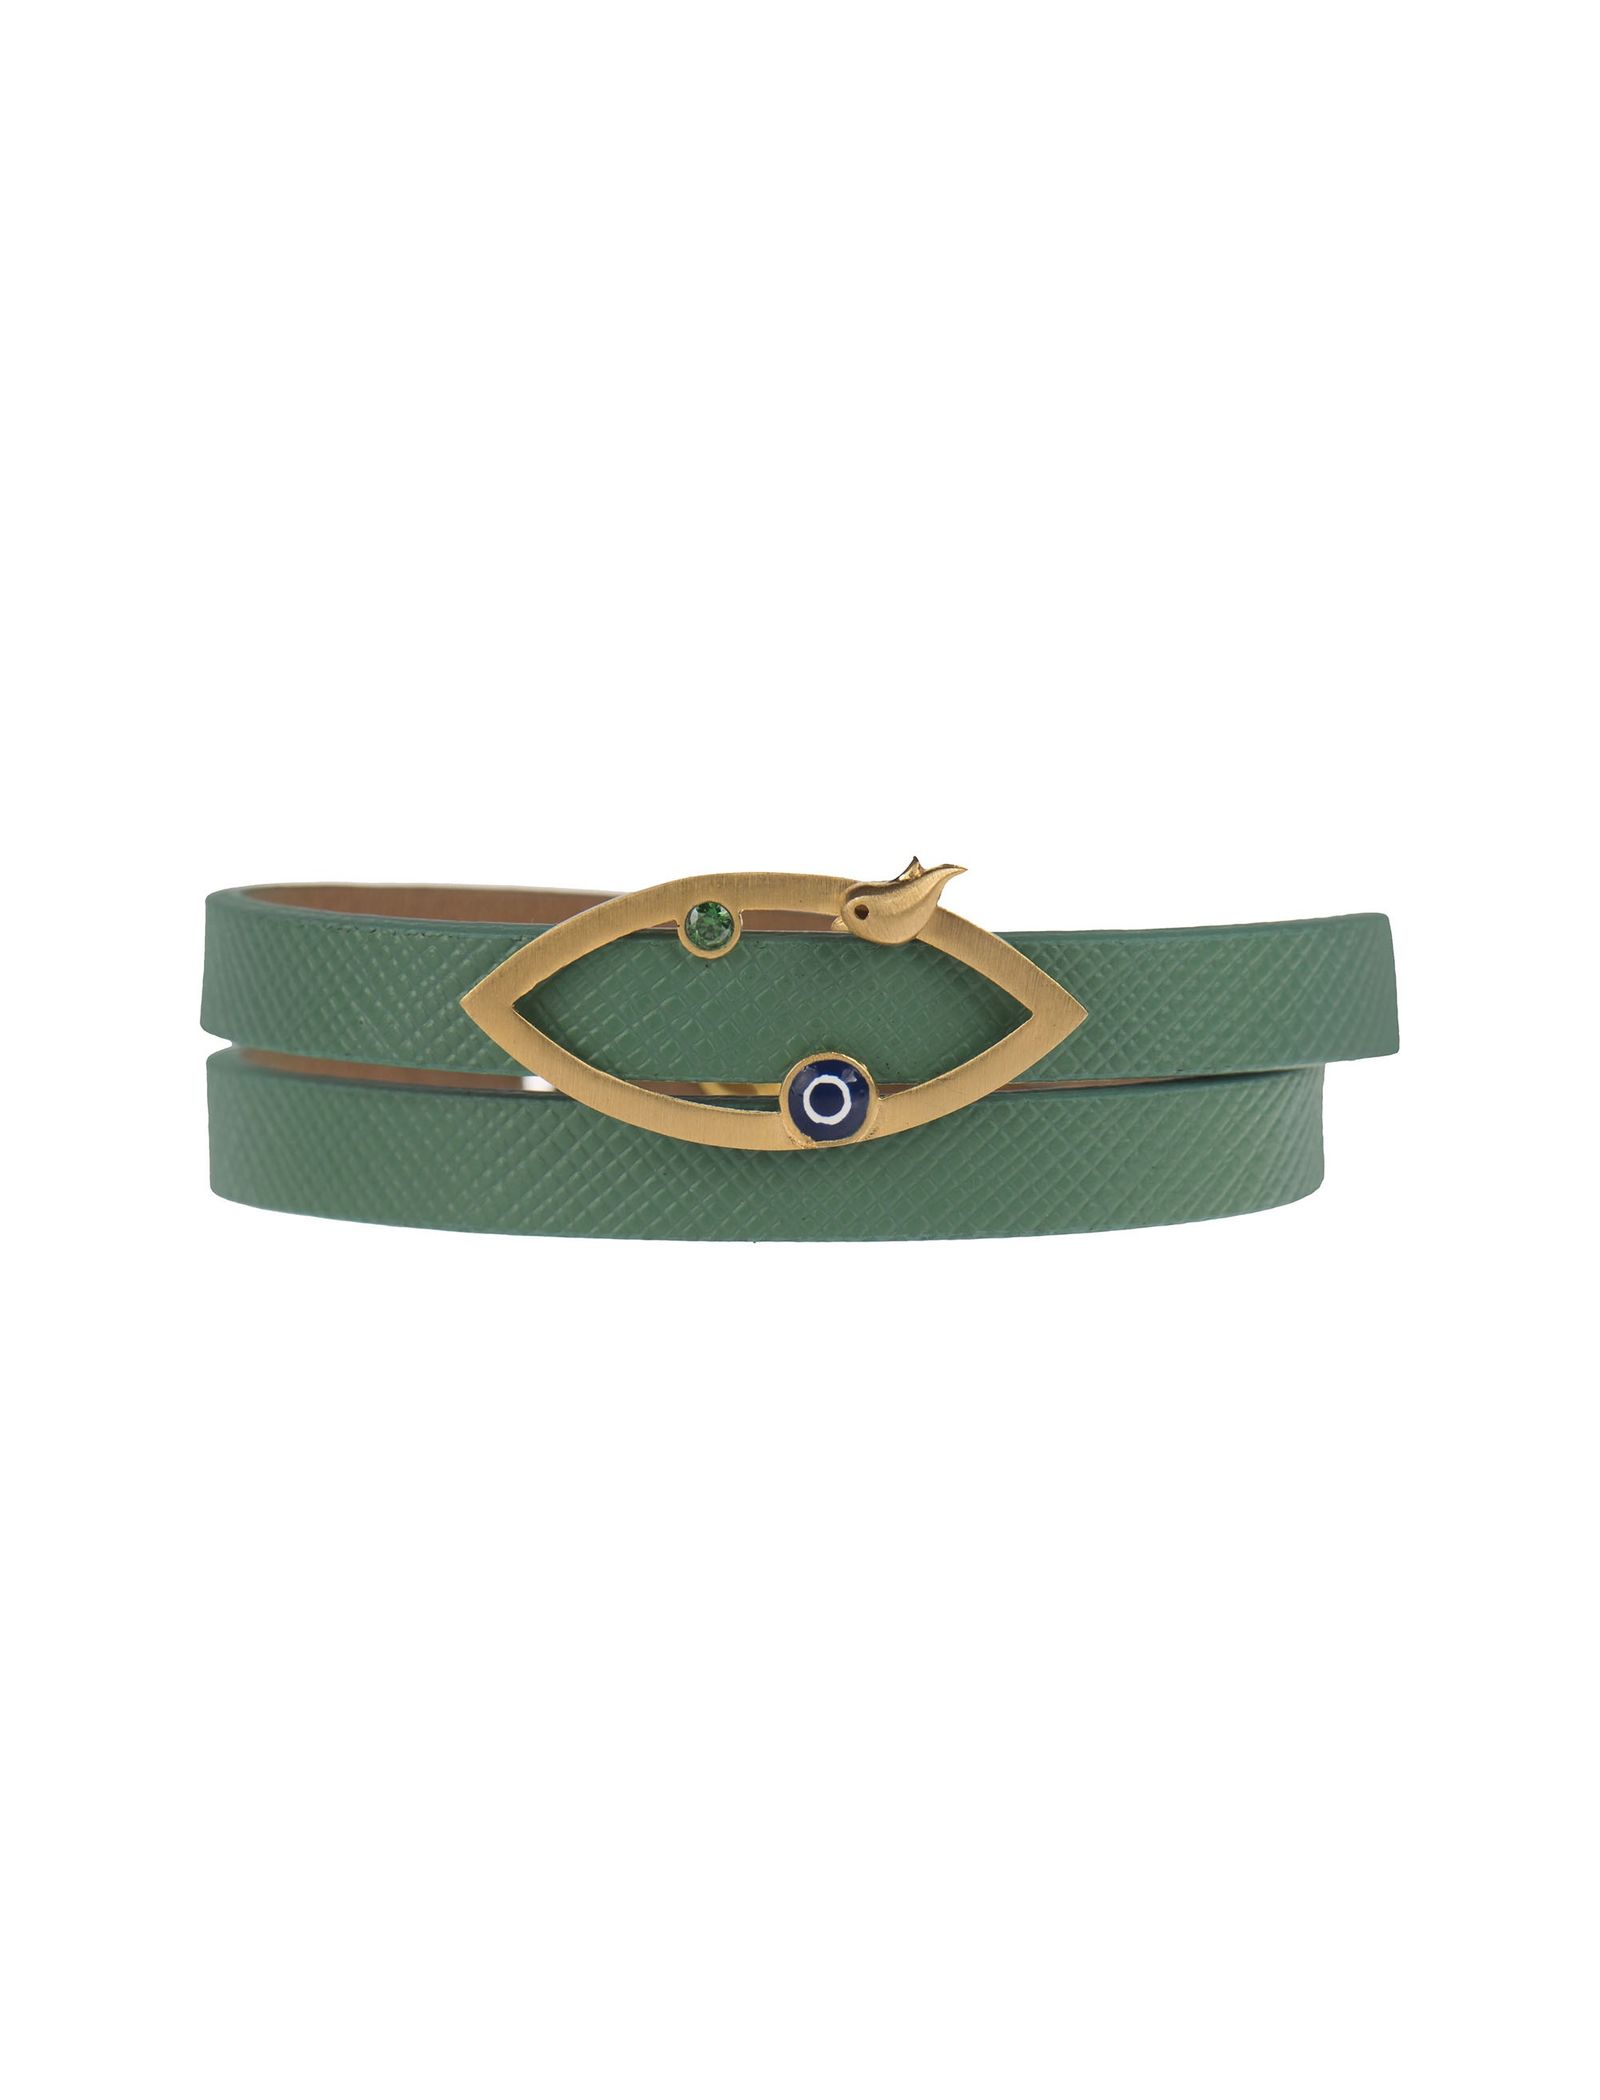 دستبند طلا زنانه - درسا - سبز آبي - 3